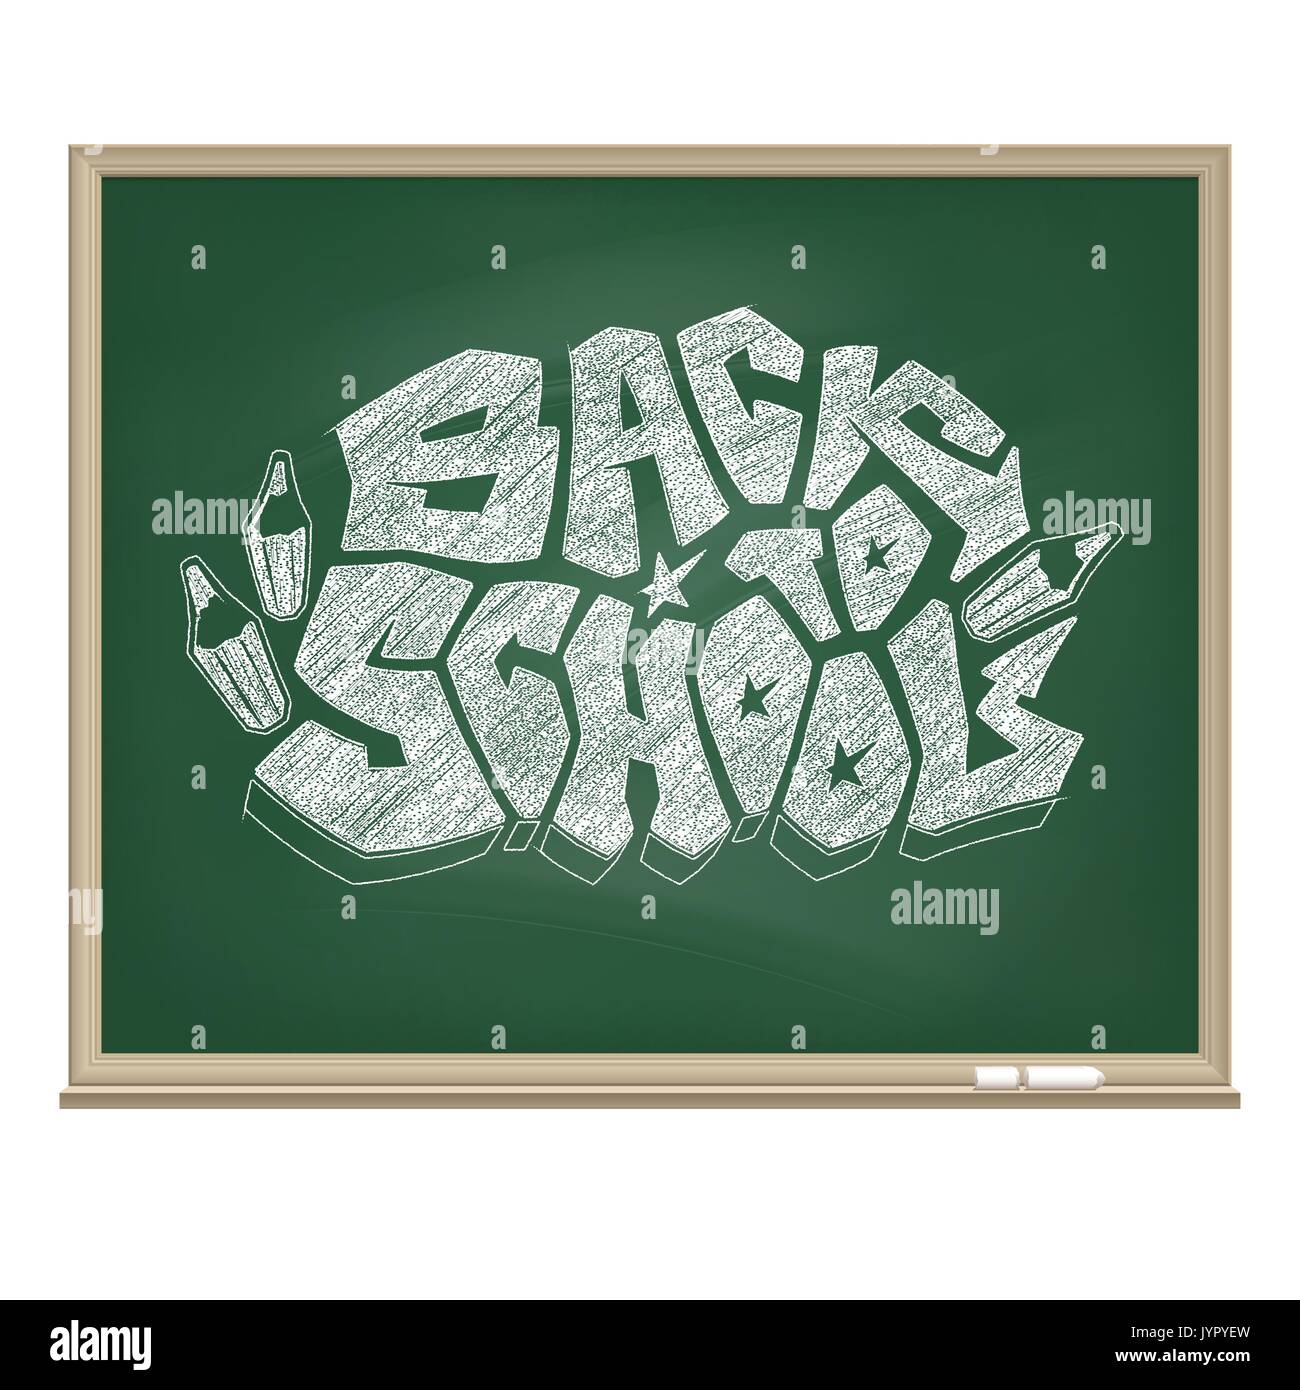 Graffiti logo Zurück zur Schule durch eine weiße Kreide auf die Pädagogische grünes Brett gezeichnet. Original vektor Symbol der Bereitschaft für eine neue Schule. Stock Vektor